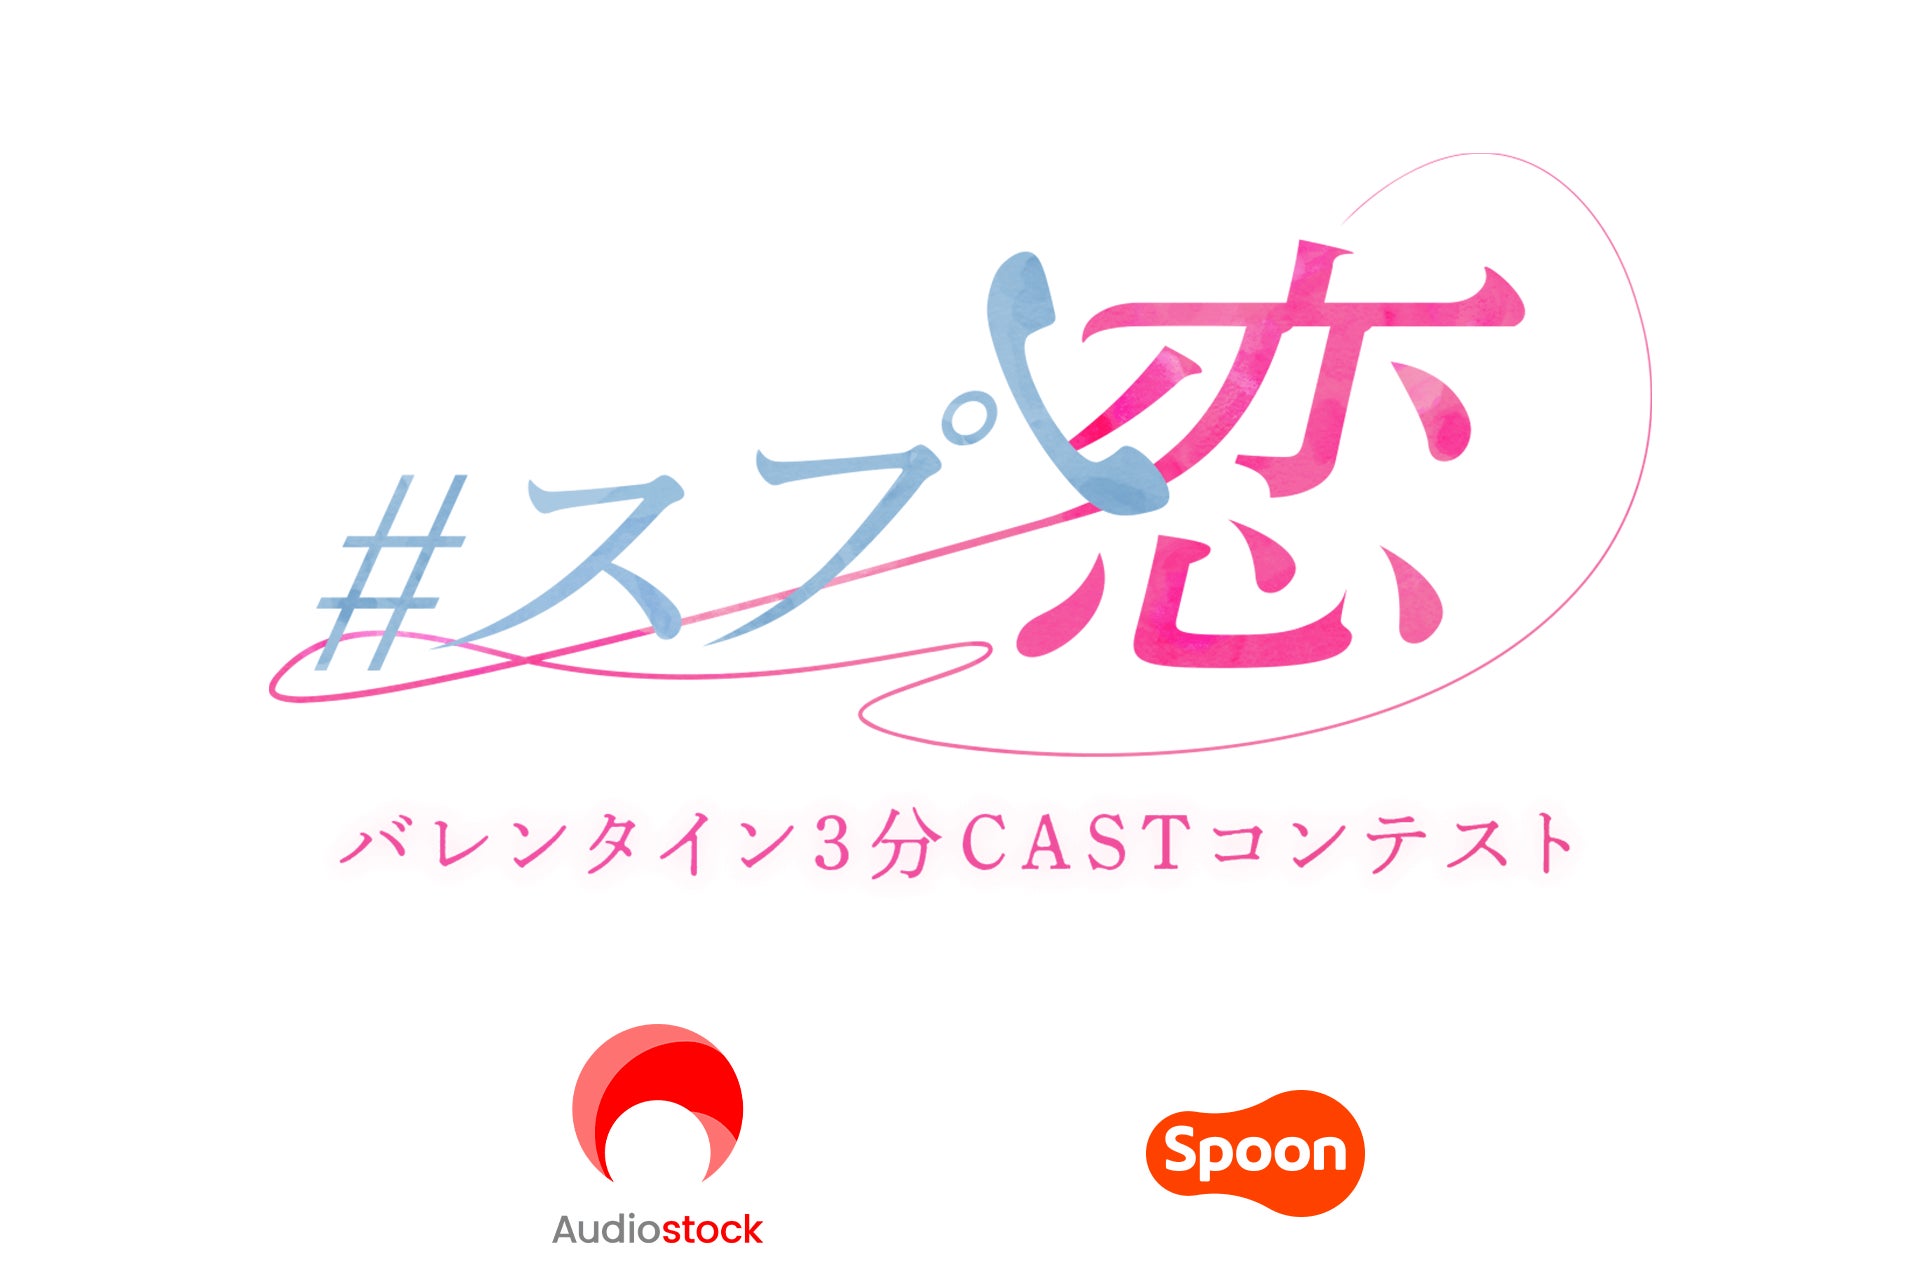 バレンタイン特別企画！音声配信アプリ Spoon 主催のボイスドラマコンテスト「#スプ恋」へ  Audiostock の楽曲を提供